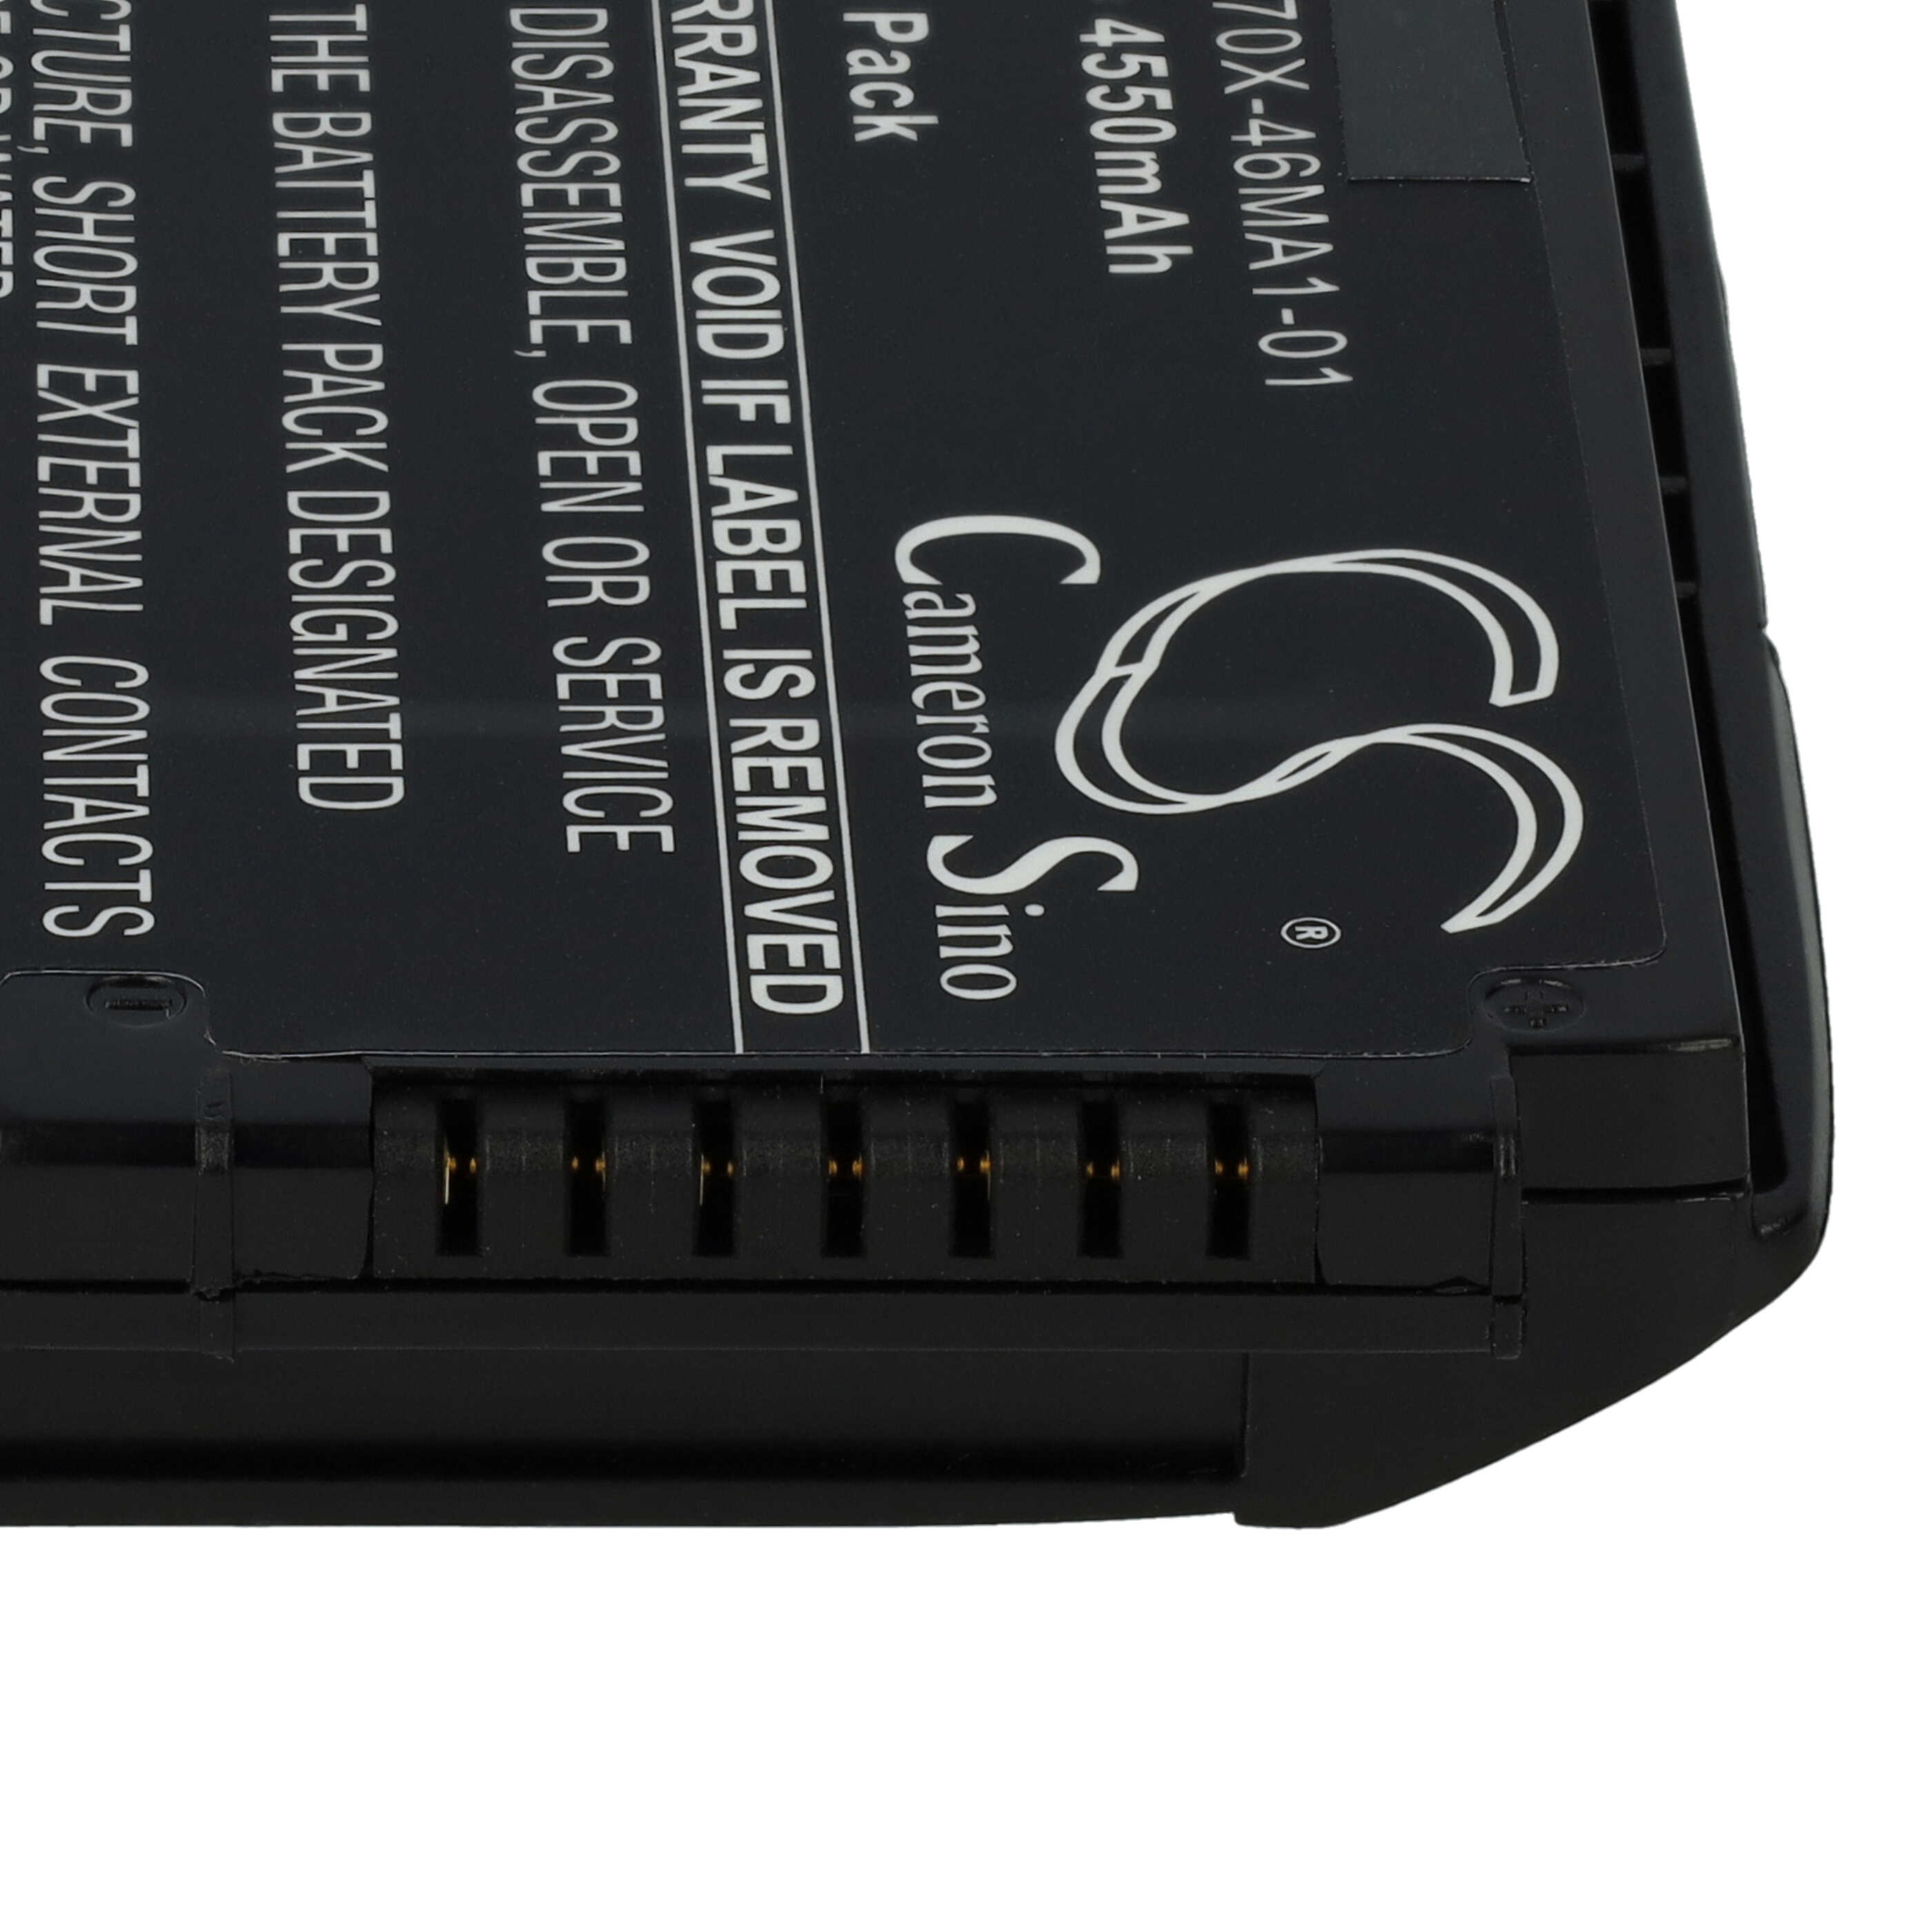 Barcodescanner-Akku als Ersatz für Motorola 82-171249-01, BT-000318, 82-171249-02 - 4550mAh 3,7V Li-Ion